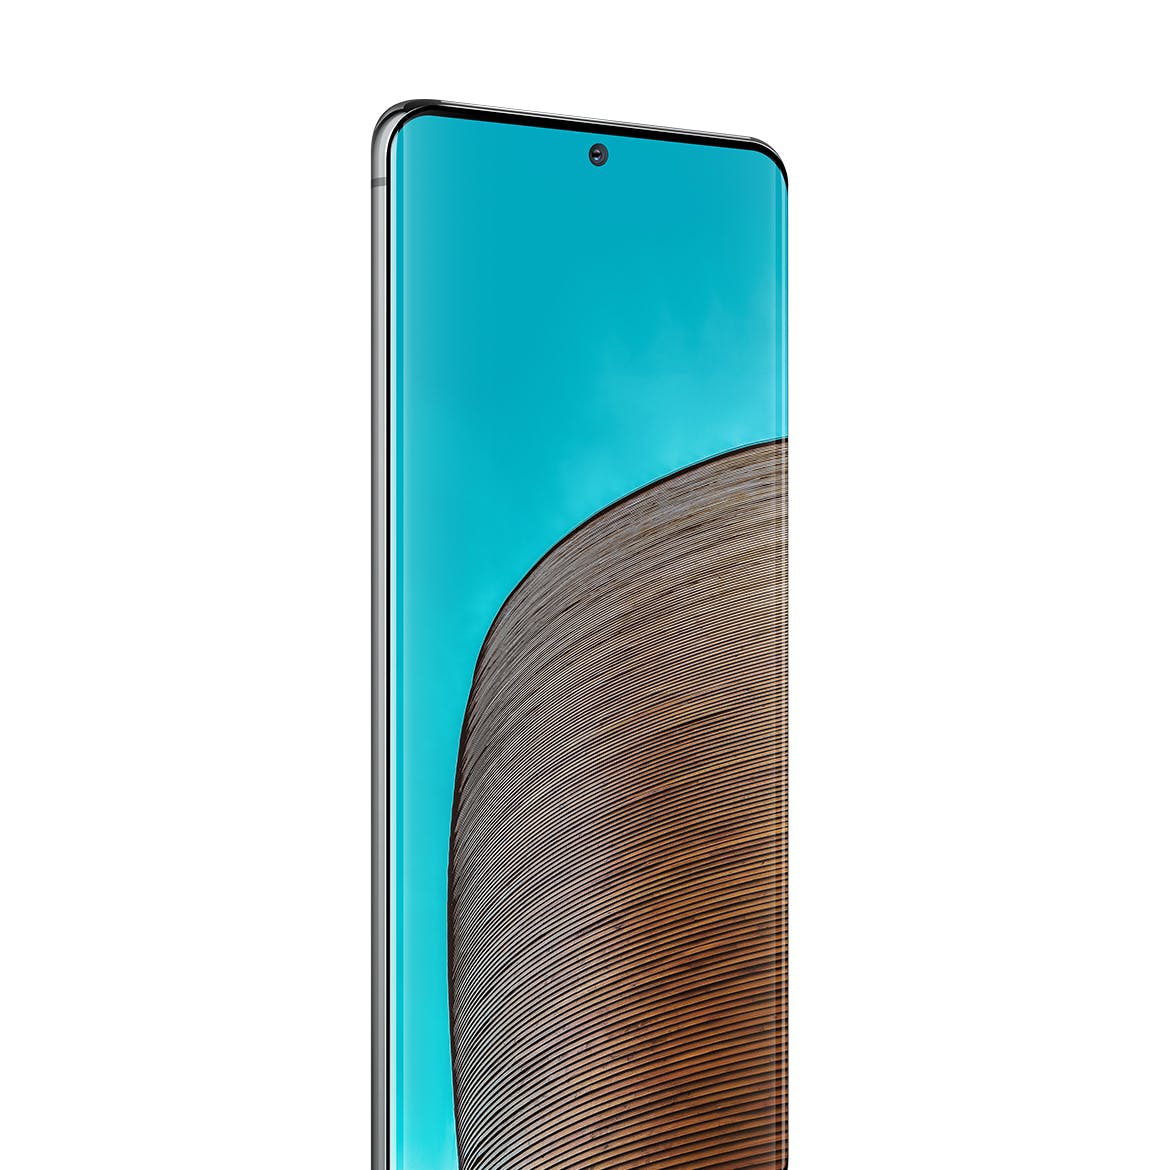 三星Galaxy S20 Ultra智能手机UI设计屏幕预览16图库精选样机 S20 Ultra Layered PSD Mockups插图(2)